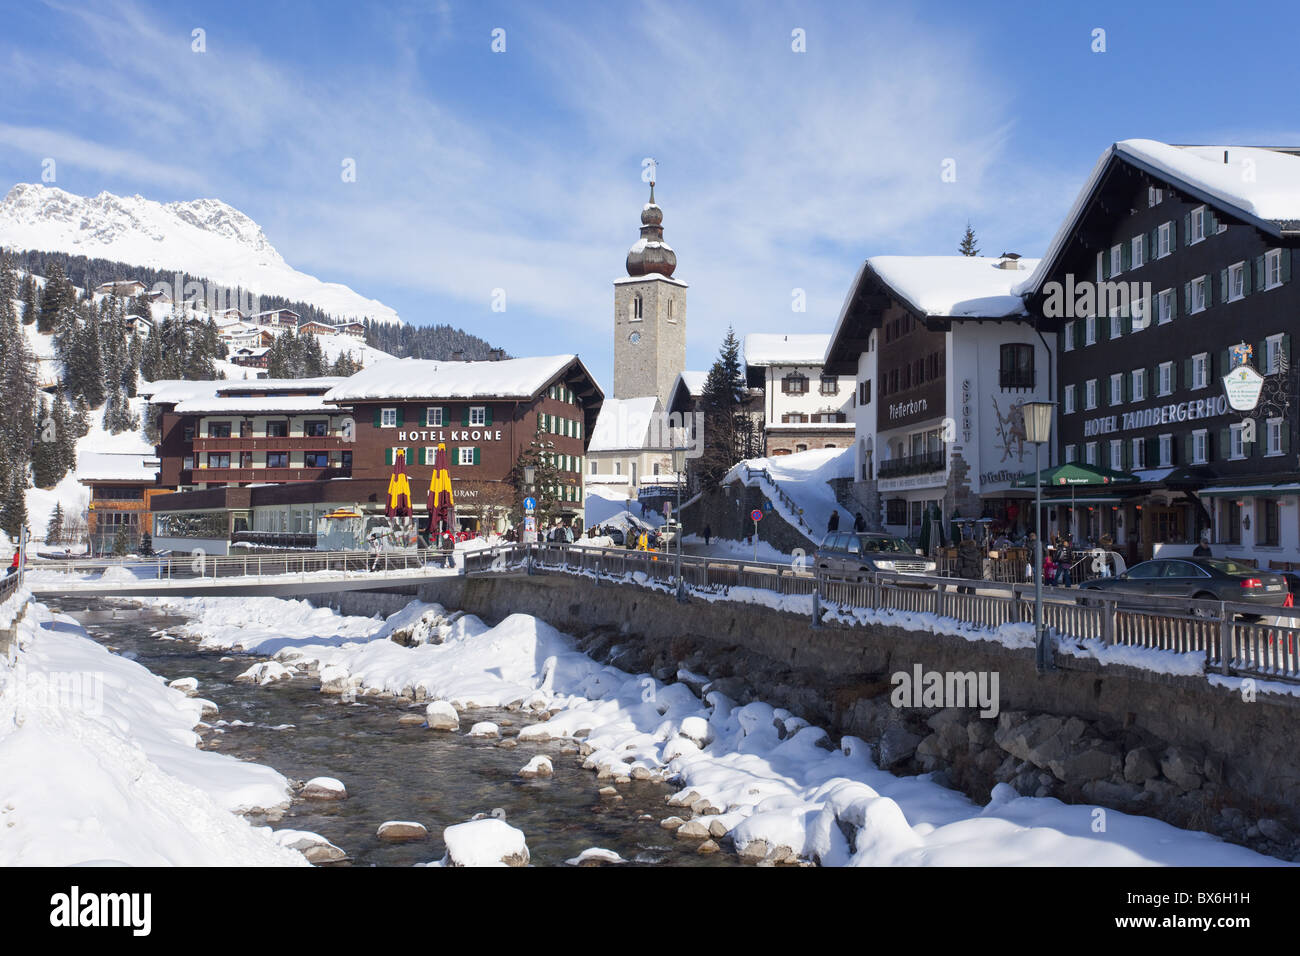 Hotel Krone, Fluss und Dorf Kirche, Lech in der Nähe von St. Anton am Arlberg im Winter Schnee, Österreichische Alpen, Österreich, Europa Stockfoto